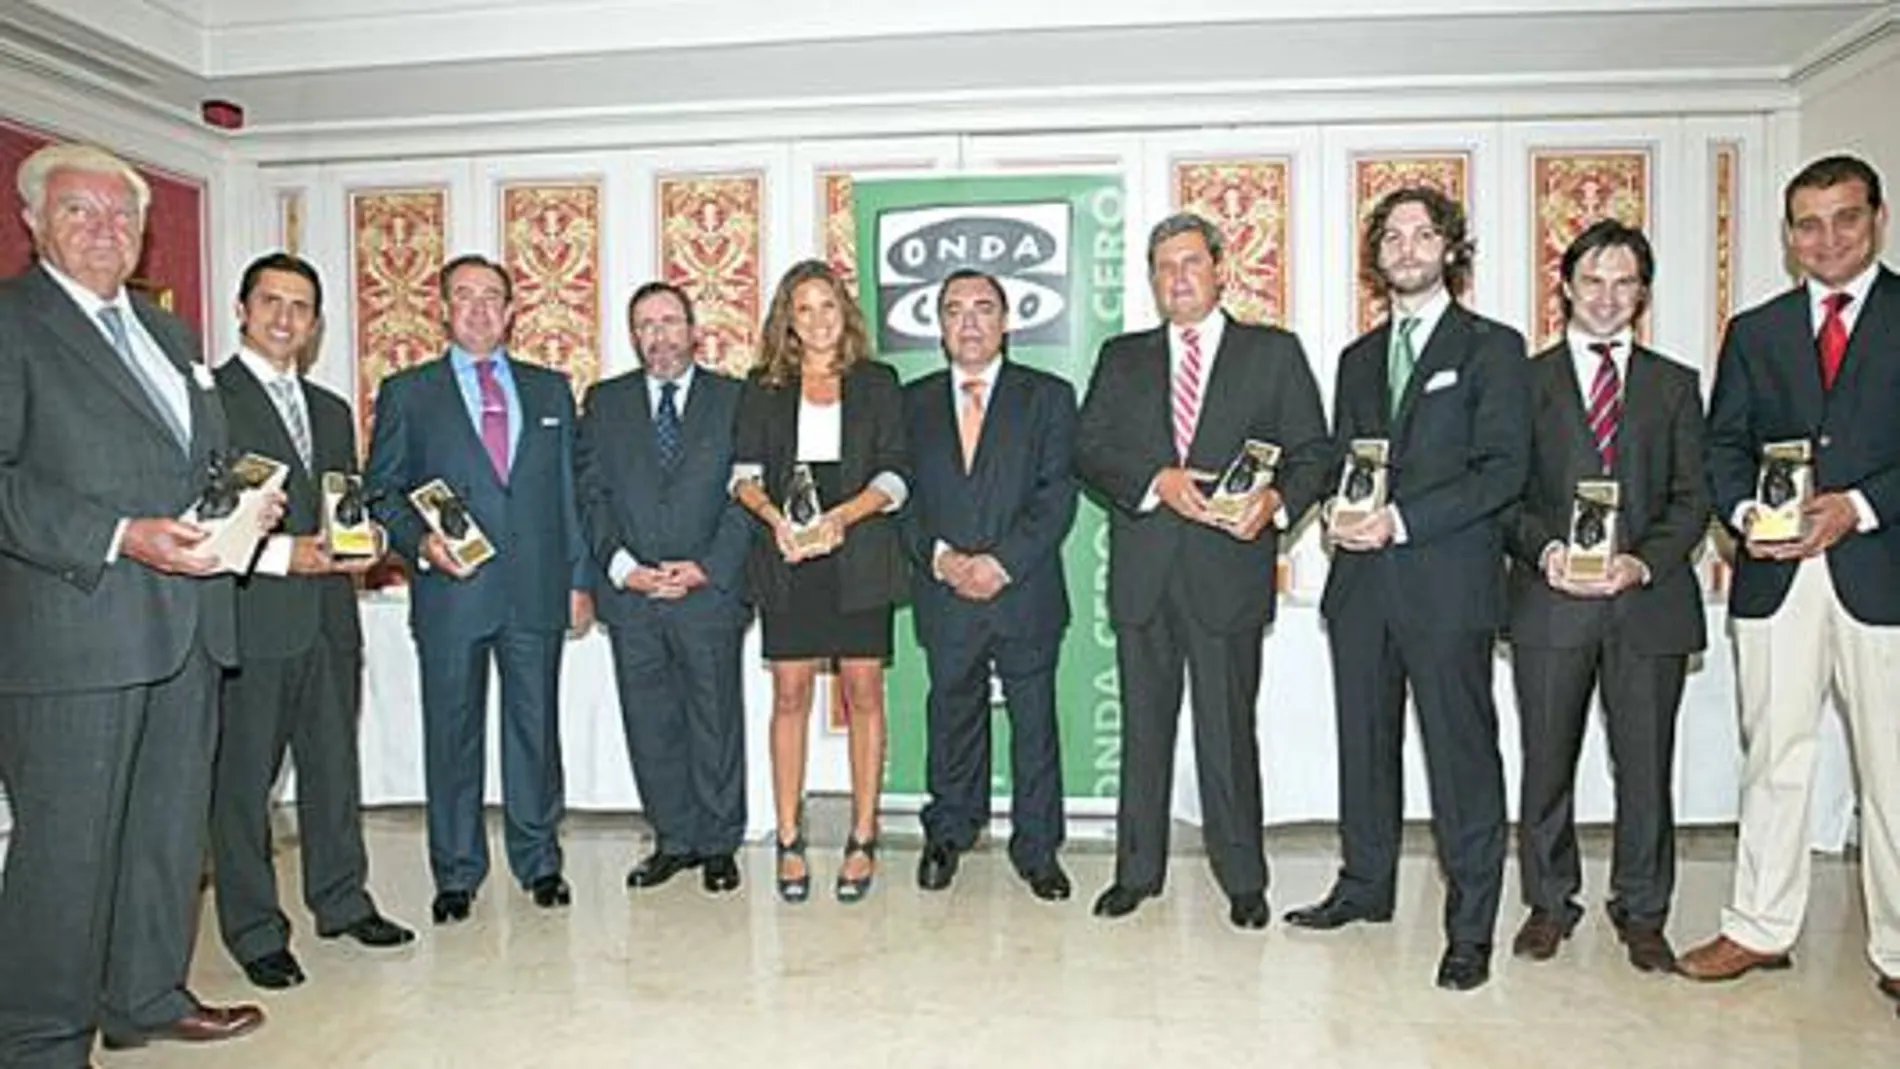 Los premiados por Onda Cero posan con sus trofeos